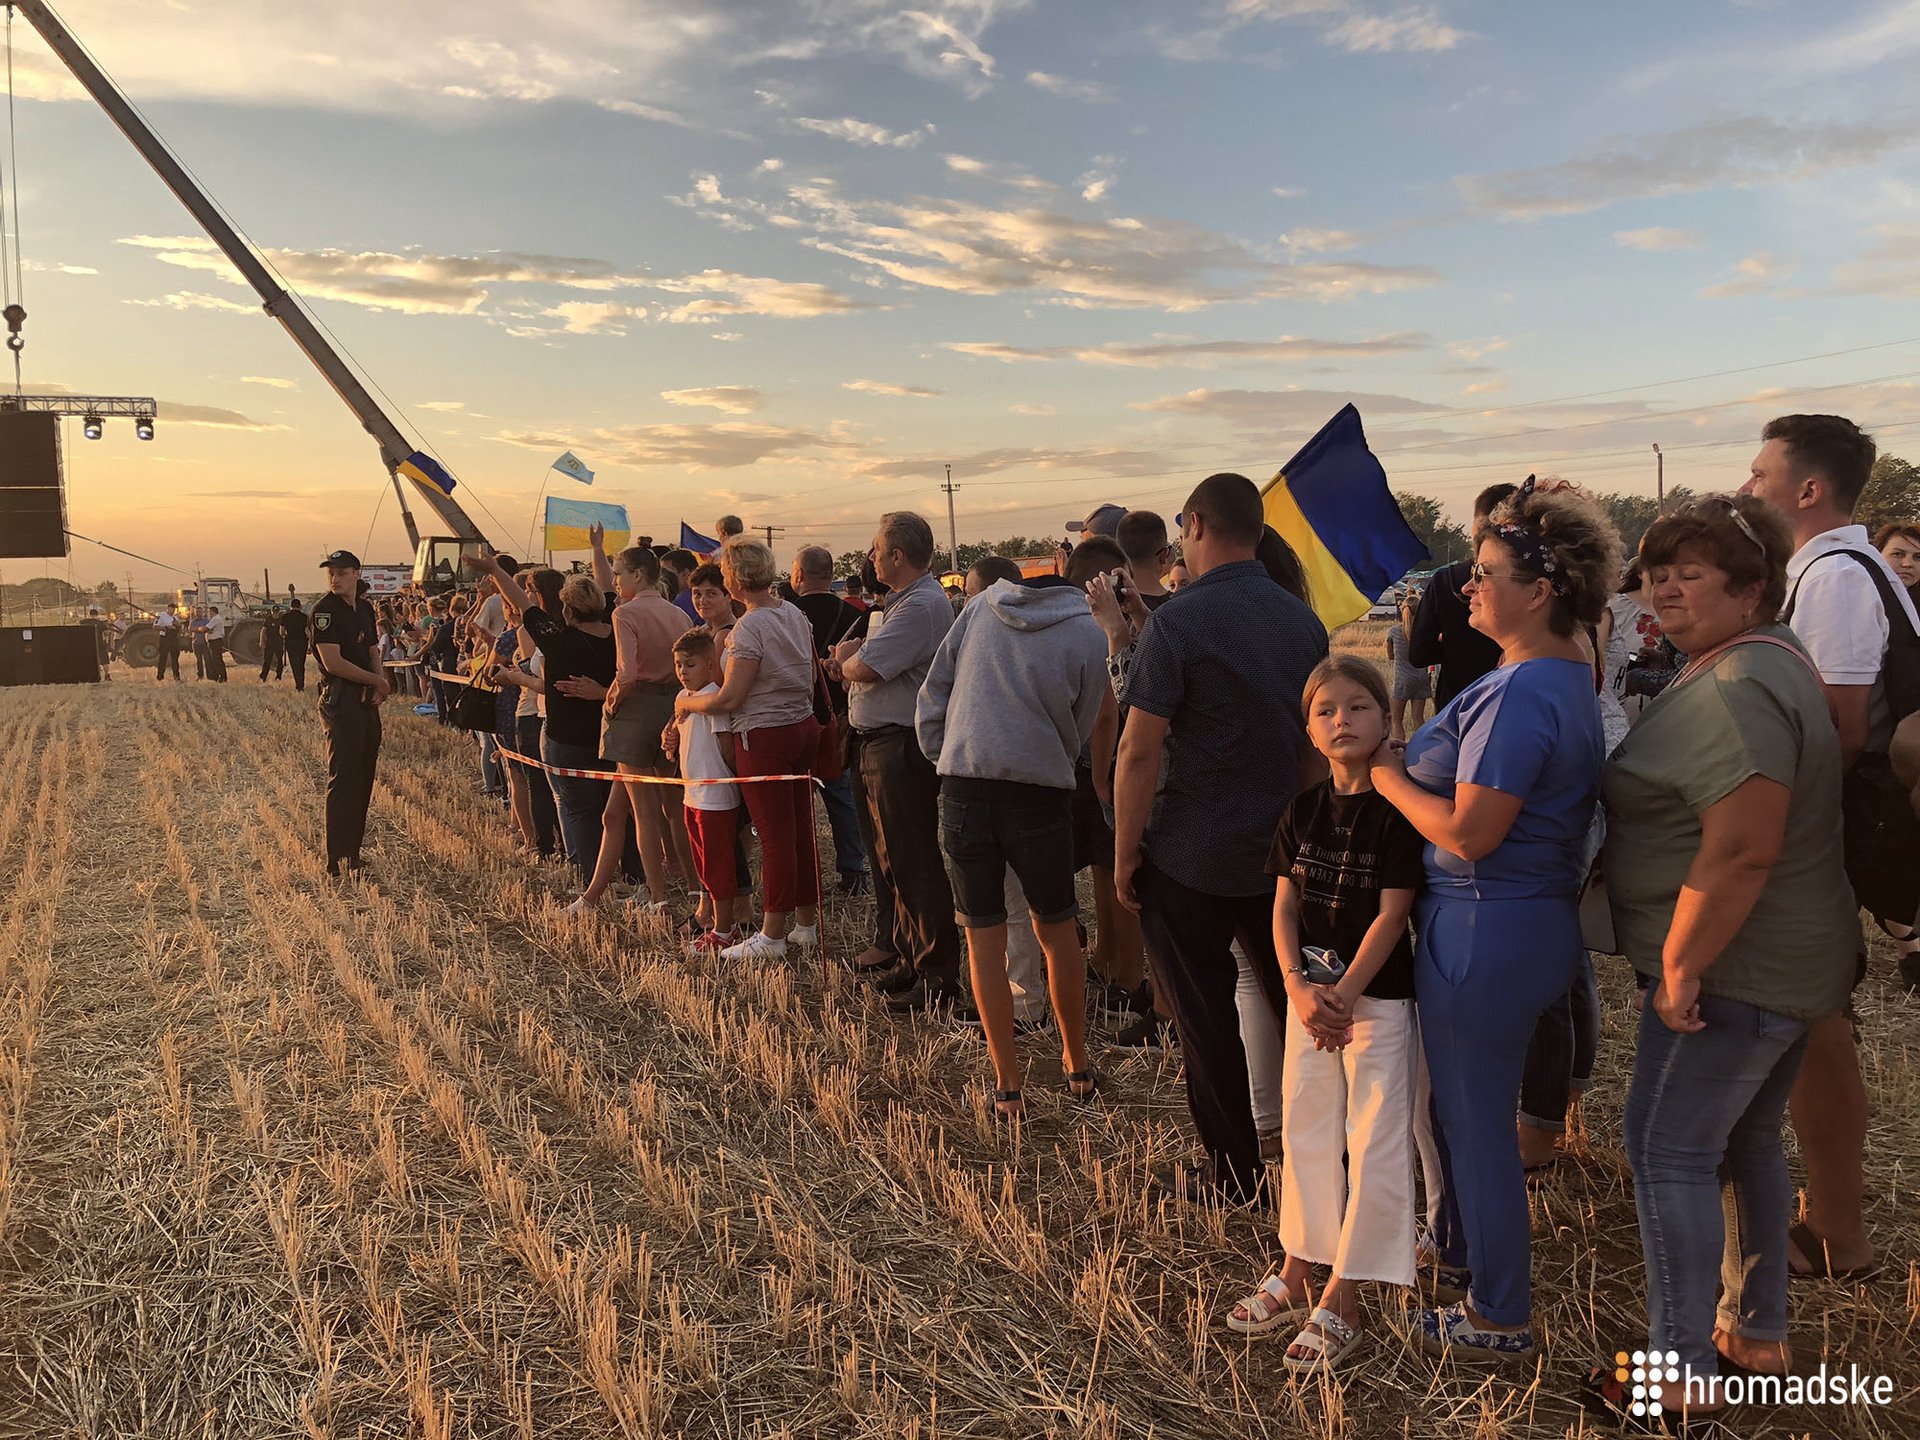 Украинская группа "Бумбокс" выступил на границе с аннексирована Крымом на пункте пропуска "Каланчак" в Херсонской области. Так группа провела акцию протеста с требованием освободить всех украинских политических заключенных. 